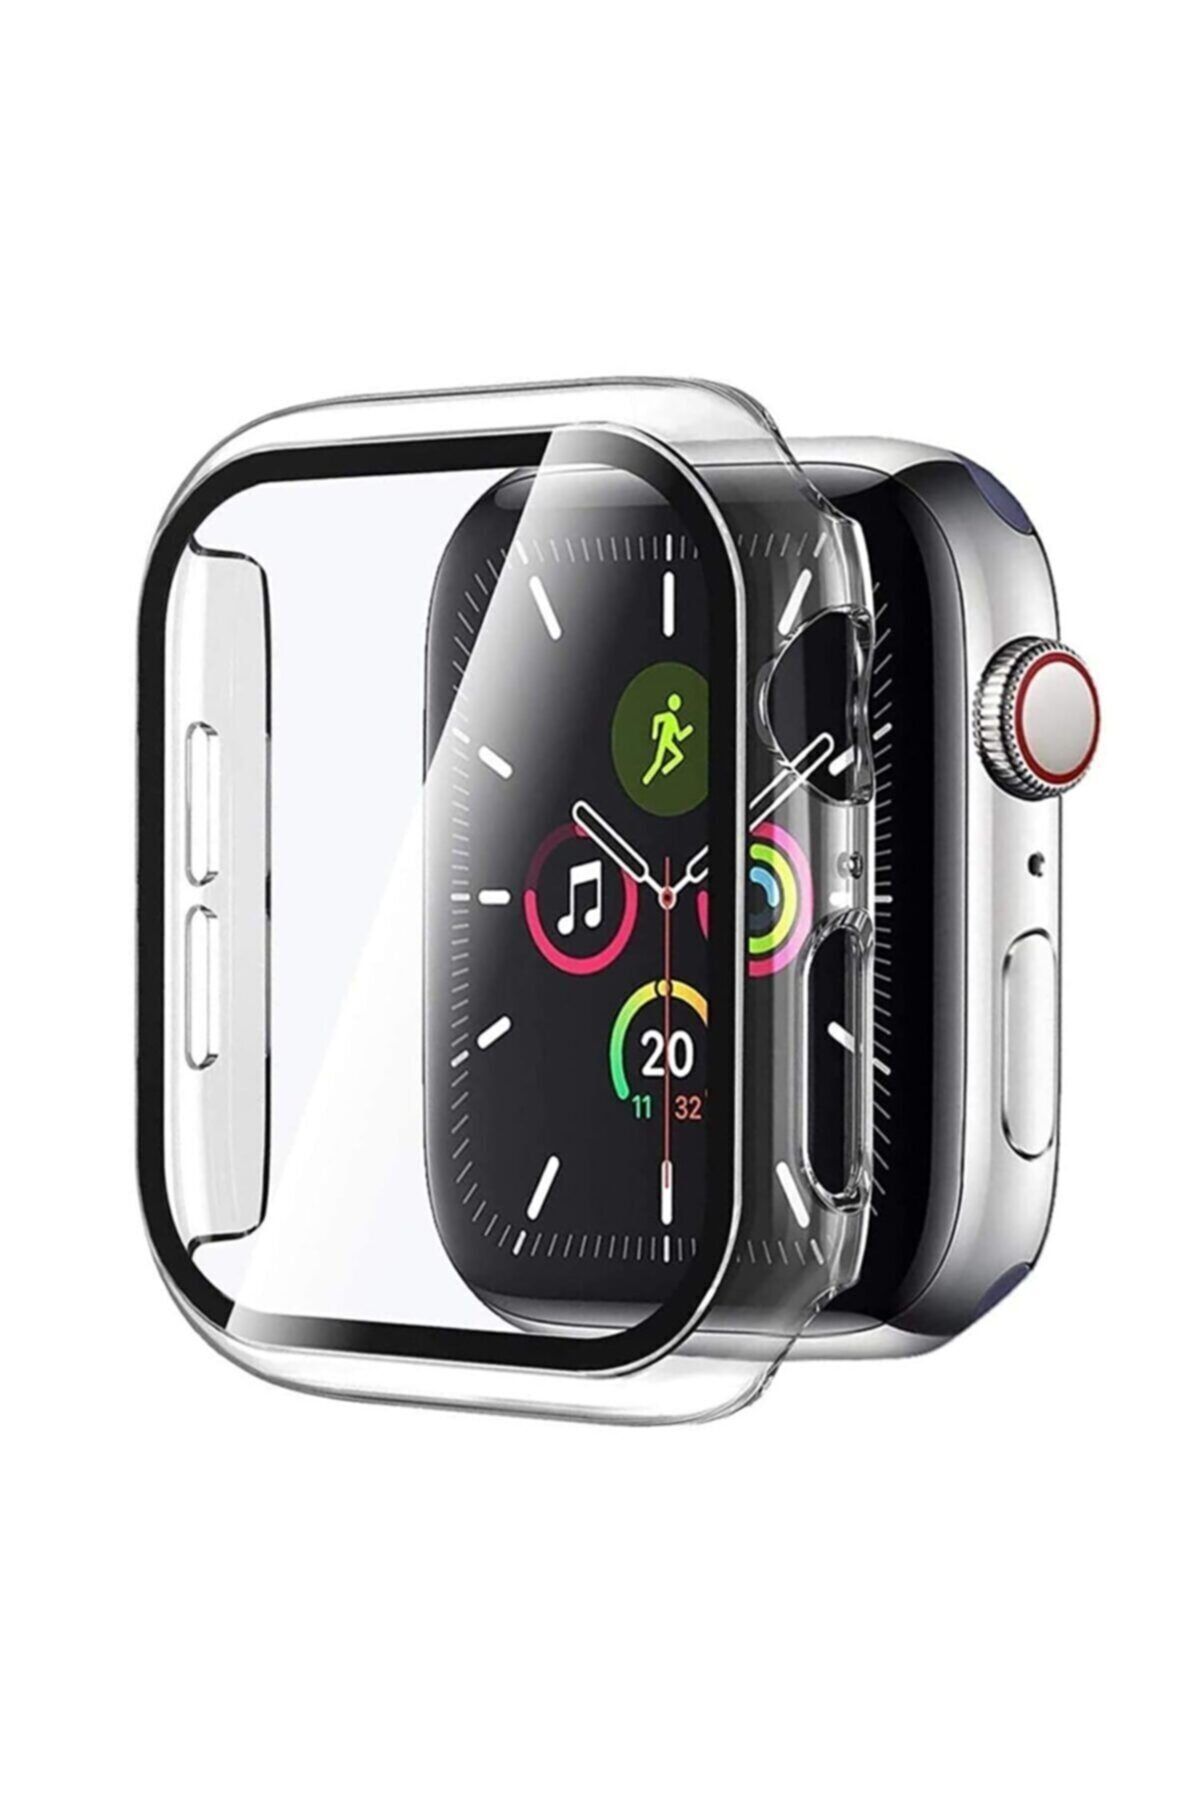 Fibaks Apple Watch 2 3 4 5 6 Se Nike 44mm Kılıf Kasa Ve Ekran Koruyucu 360 Tam Koruma Kapak